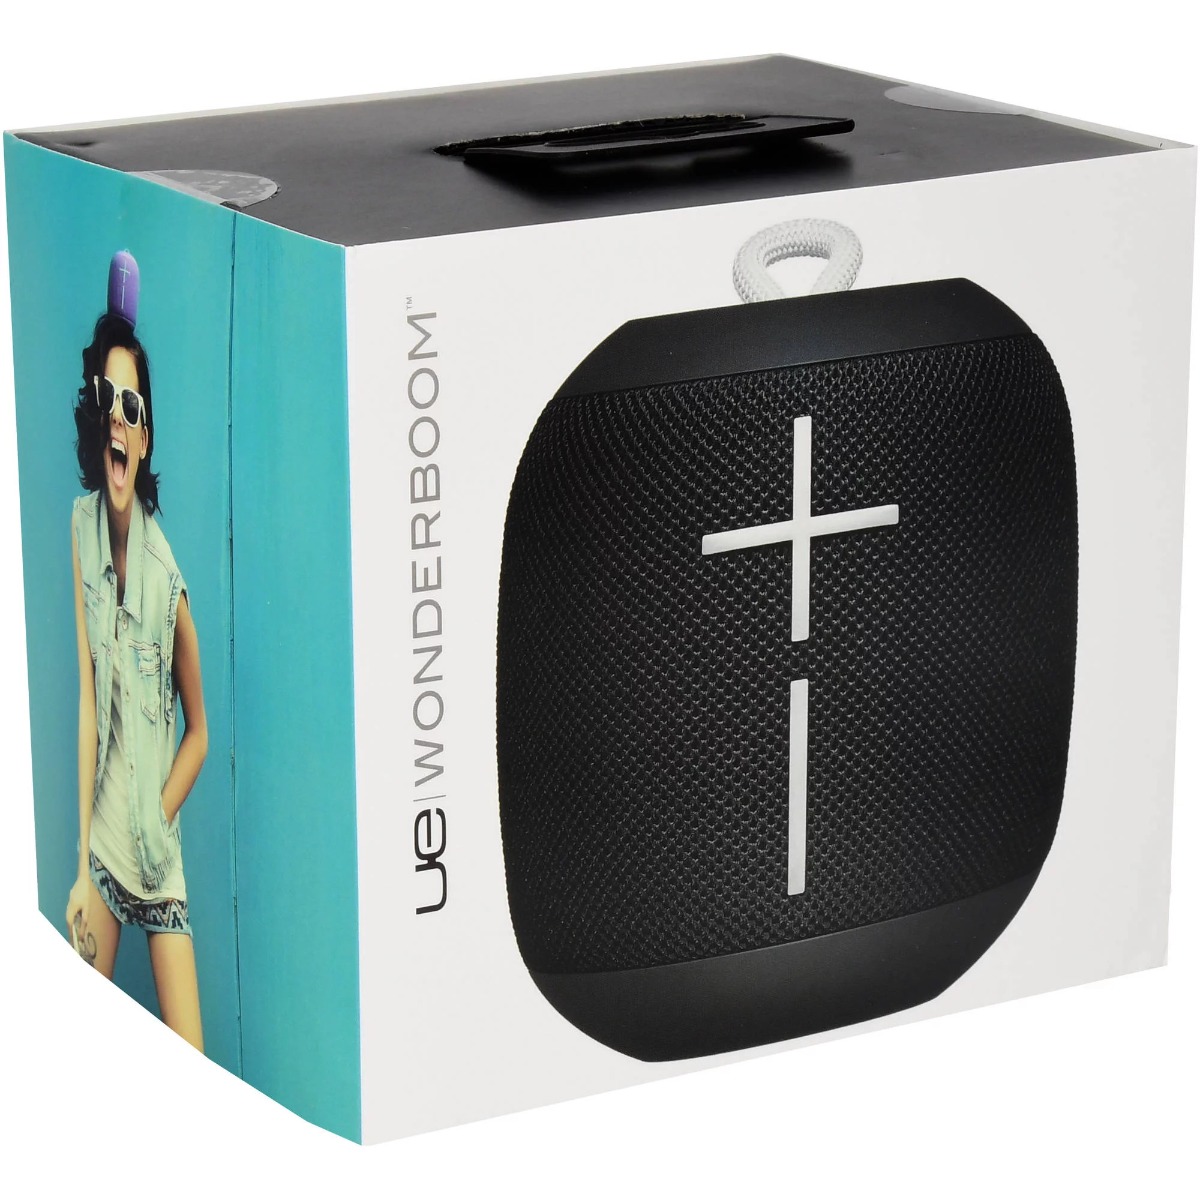 Logitech Ultimate Ears WonderBoom Portable Bluetooth Wireless Speaker - Black